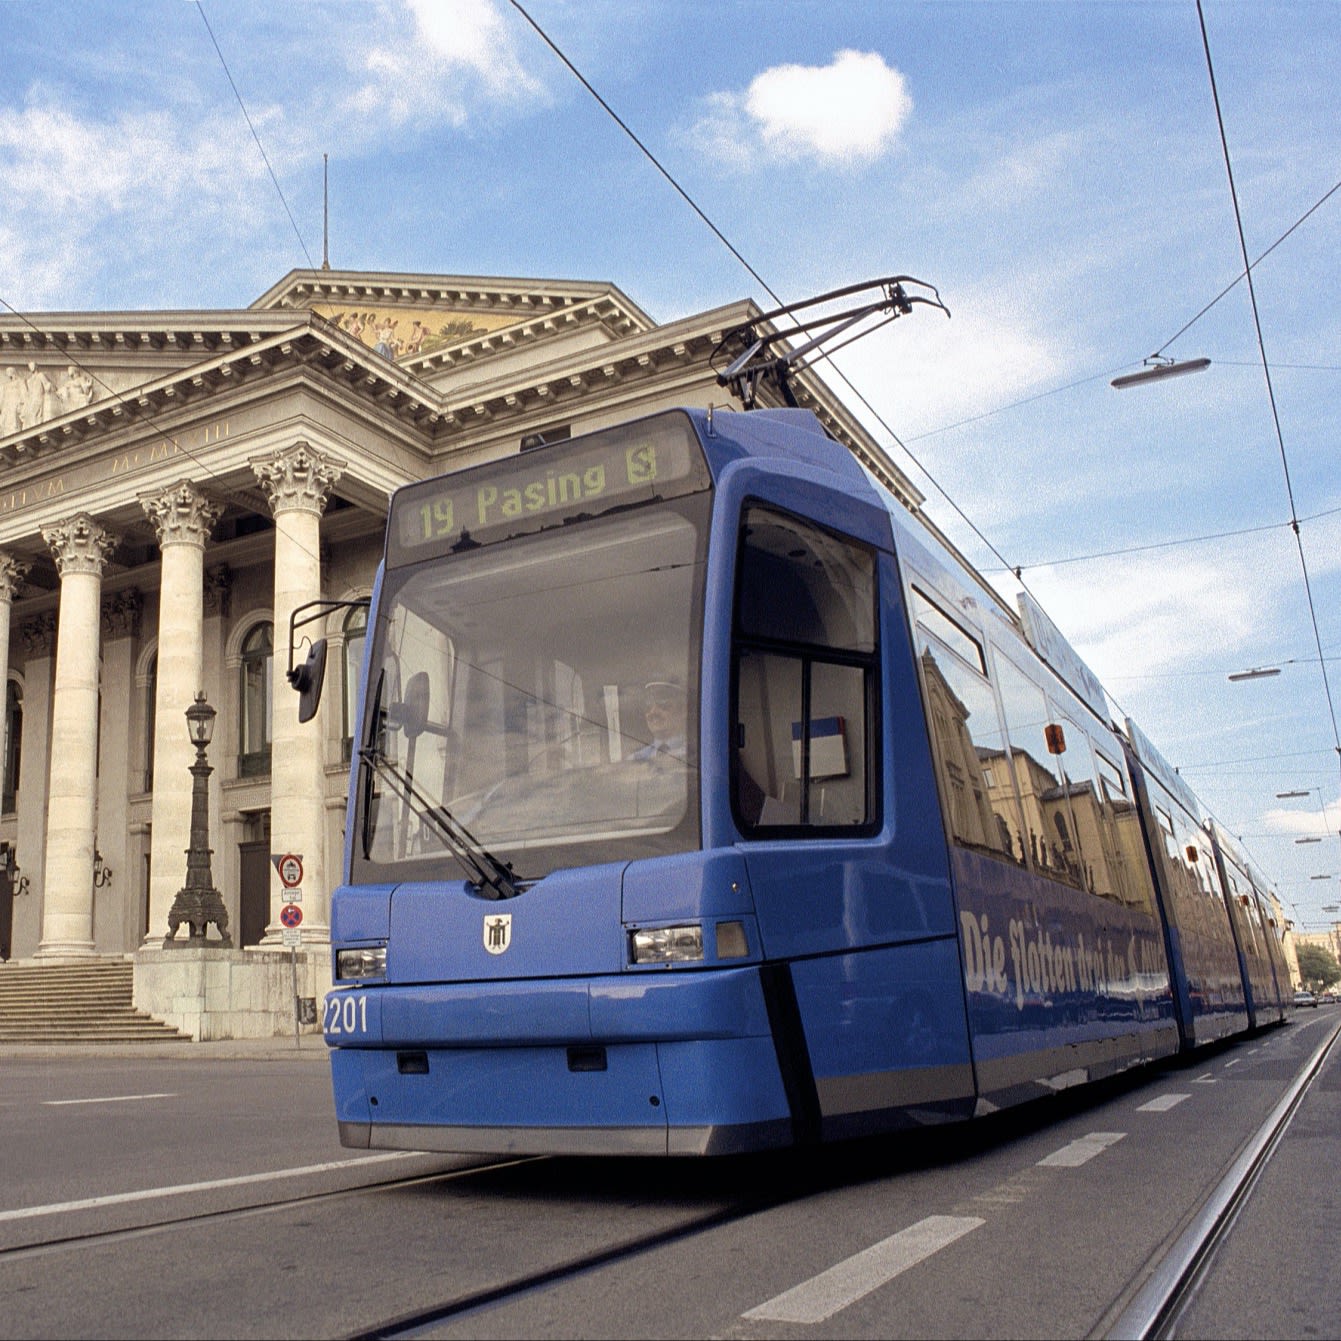 Eine Tram des Typs R3.3 vor der Münchner Oper.
Copyright: MVG/Kerstin Groh